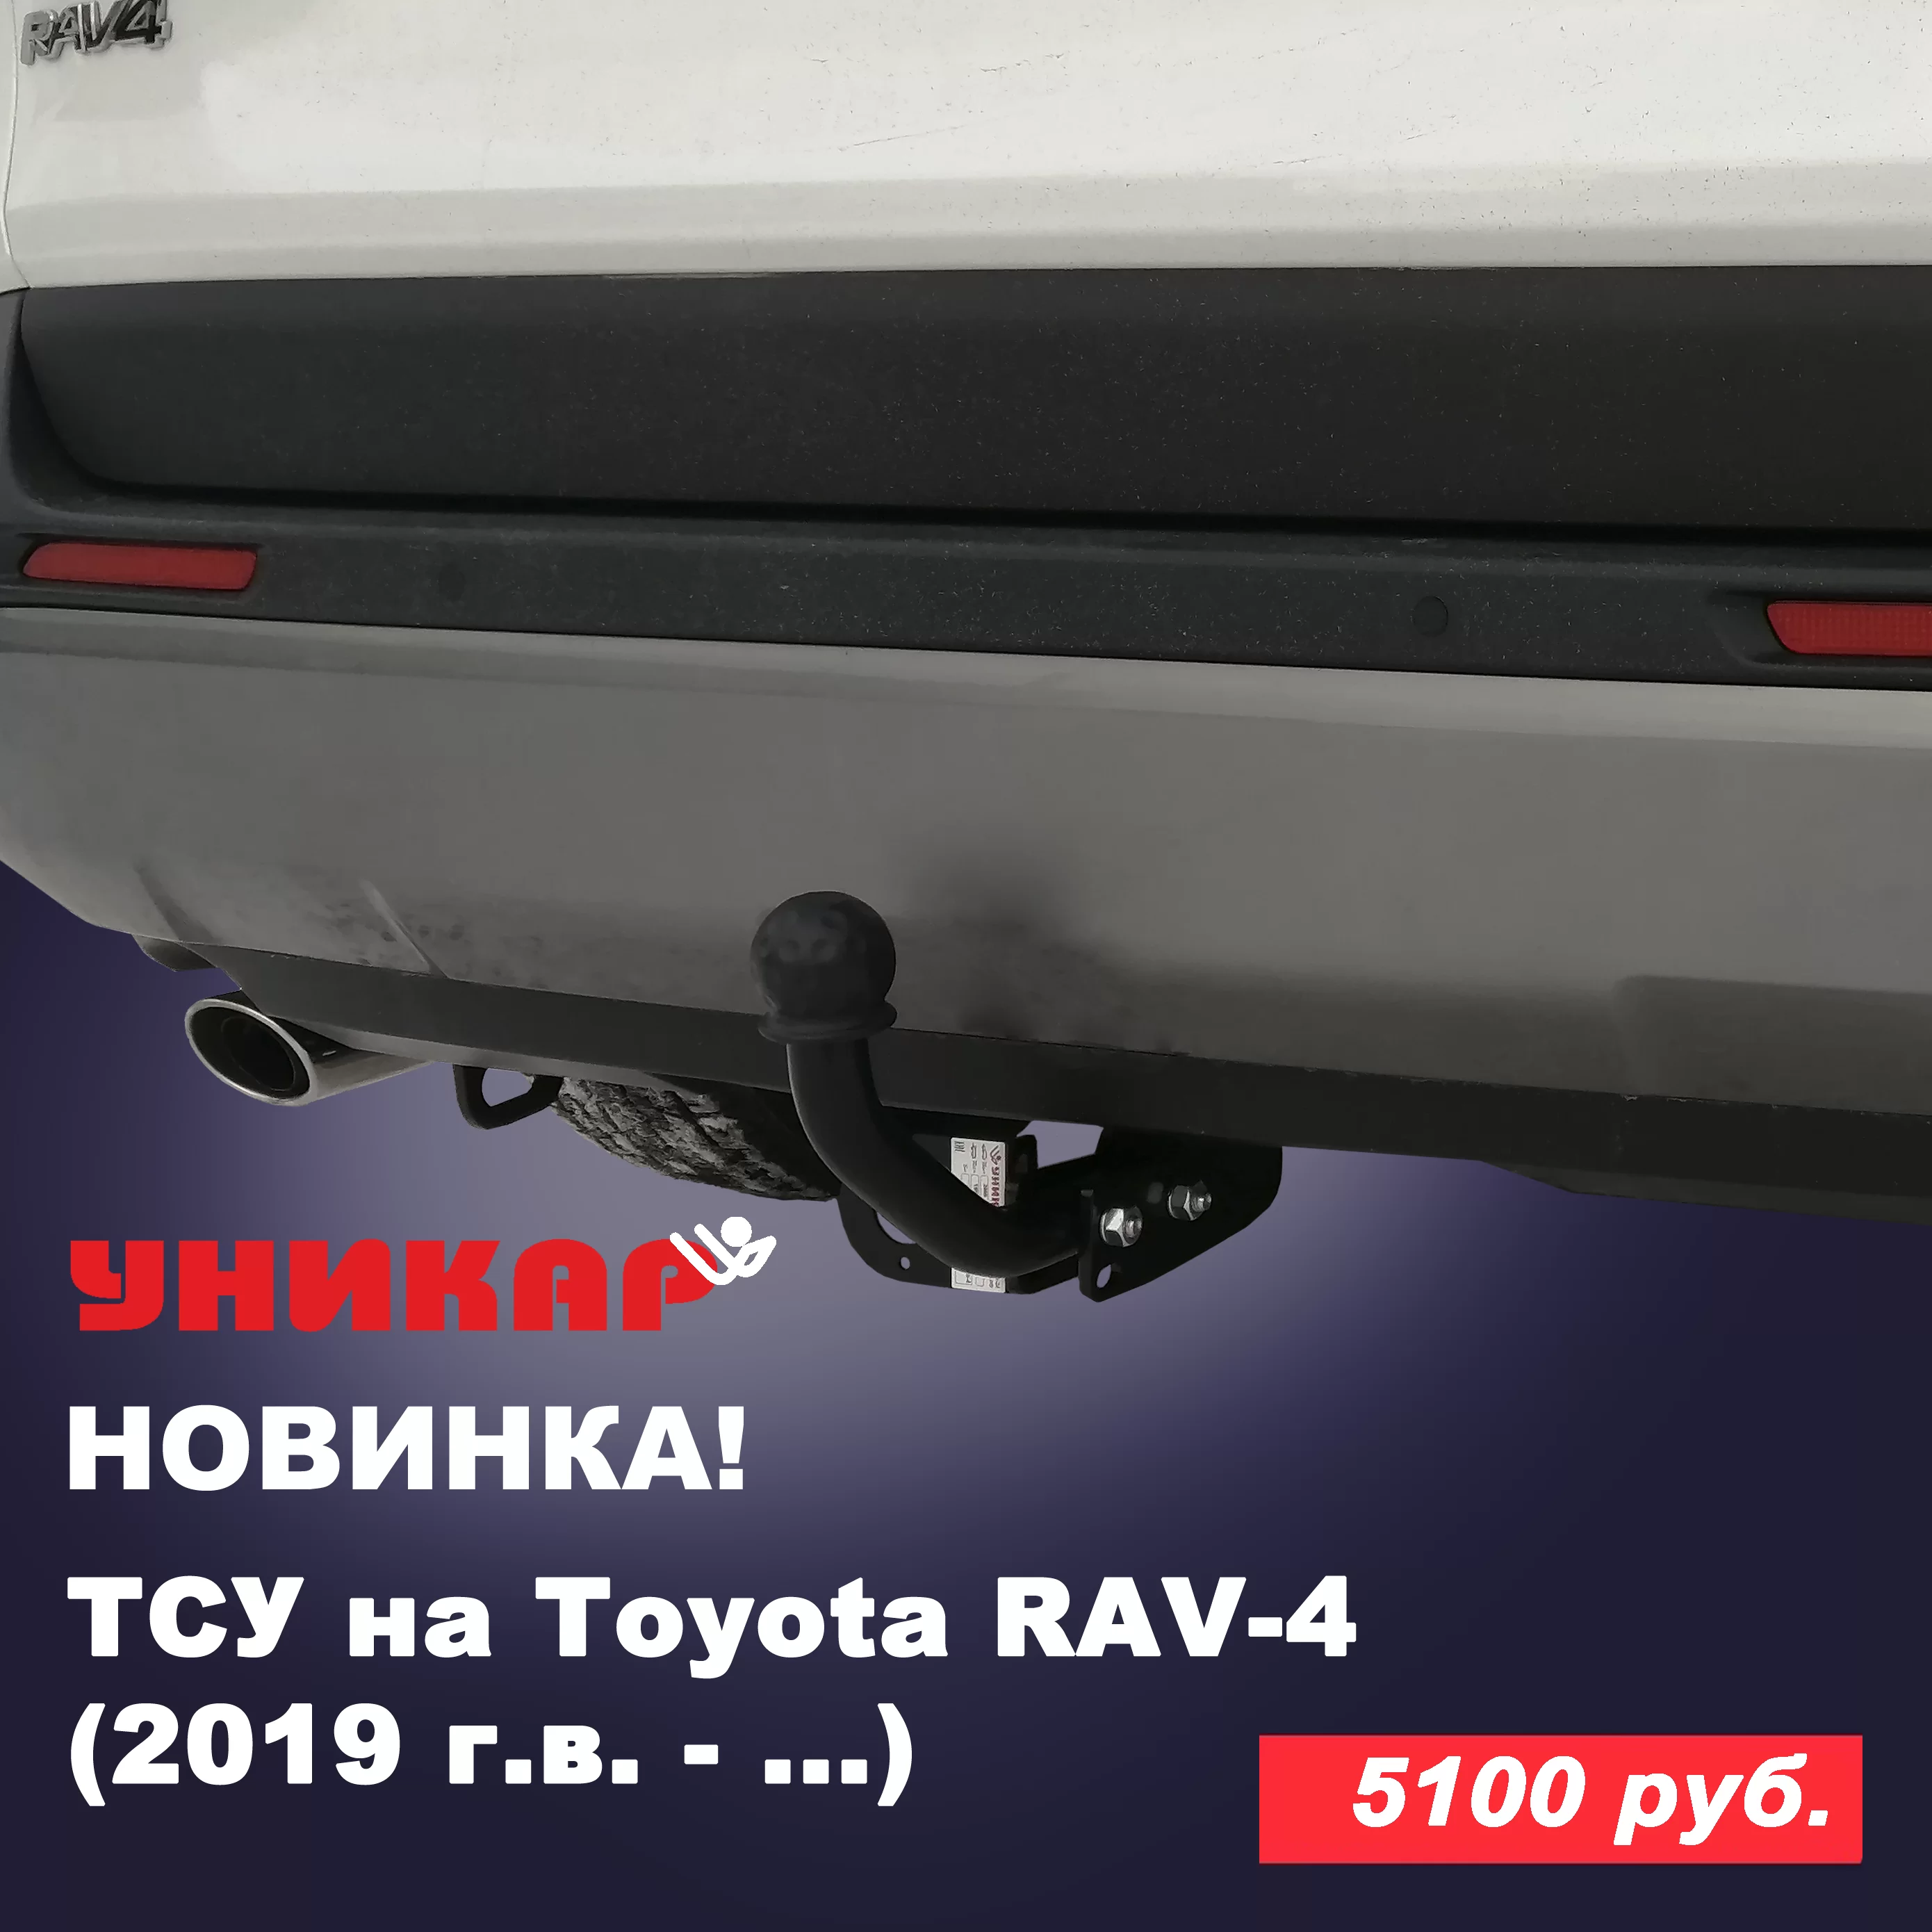 ❗ Новинка ❗ ТСУ (фаркоп) на Toyota RAV-4 (2019 г.в. — …)!